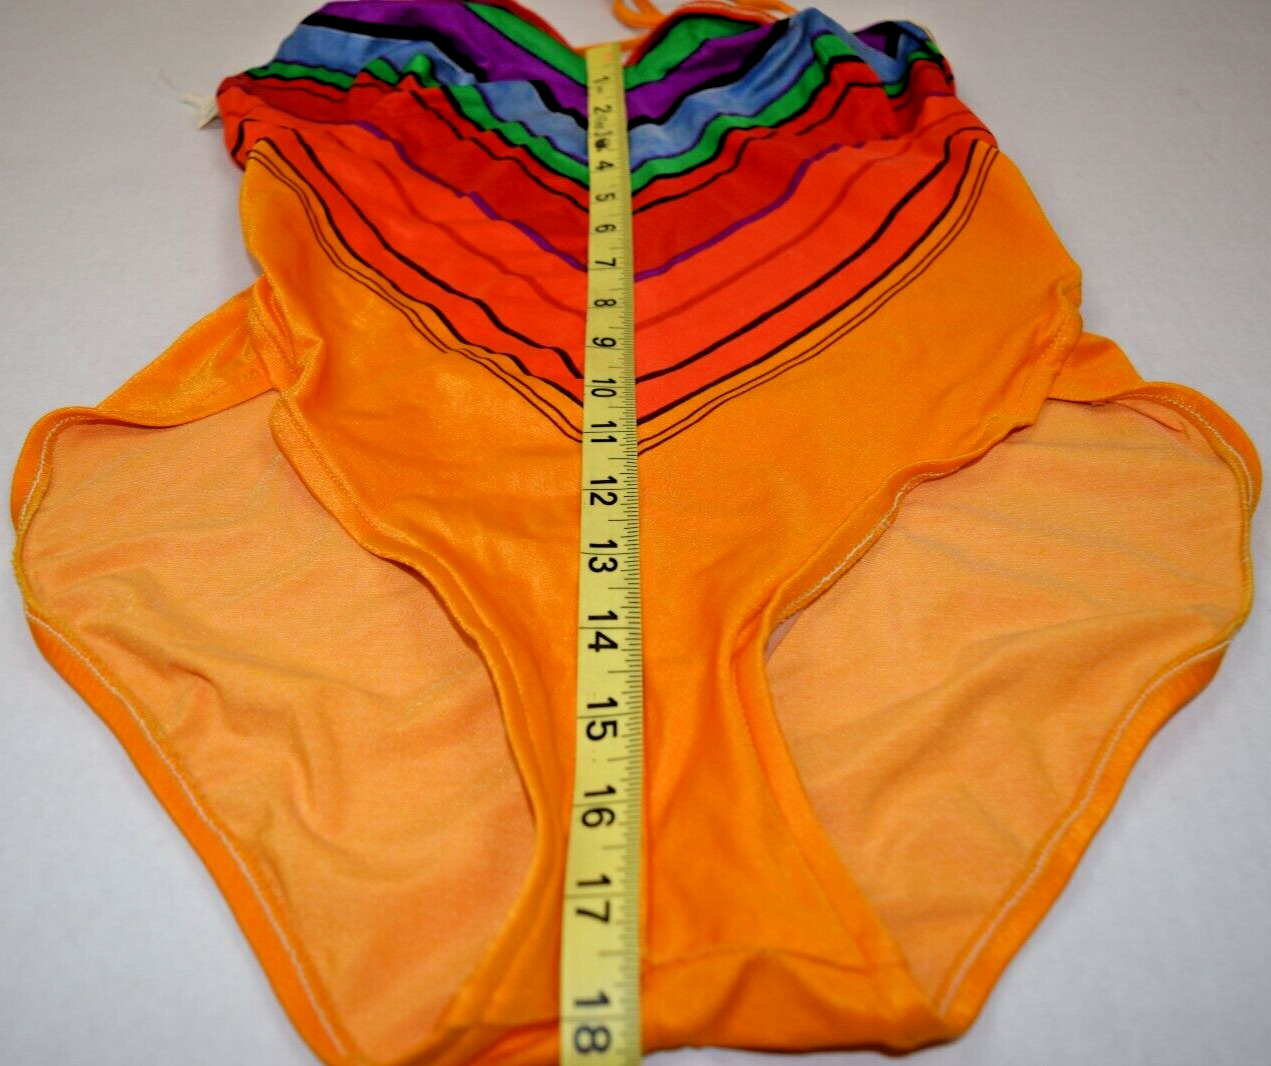 Swimsuit VTG 70s Dukes Hazard Orange Red Chevron … - image 10